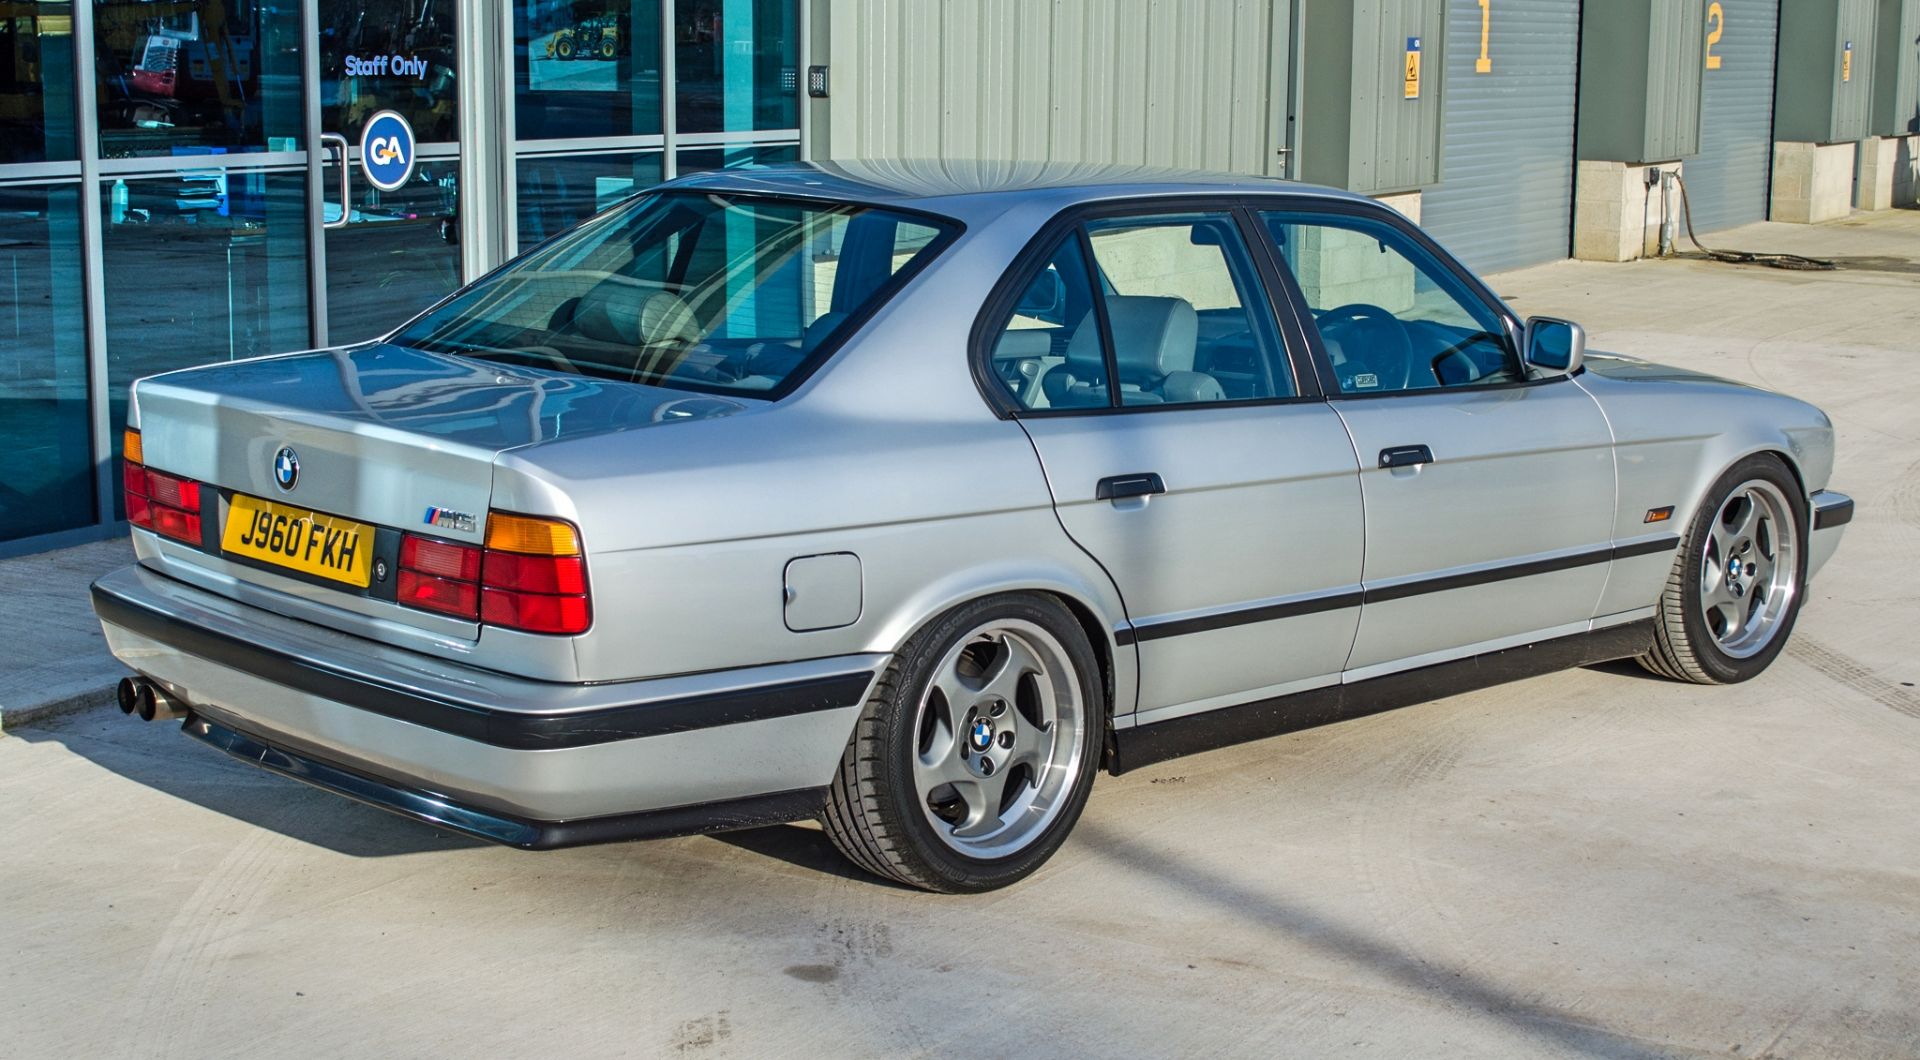 1991 BMW M5 E34 3.6 litre 4 door saloon - Image 7 of 59